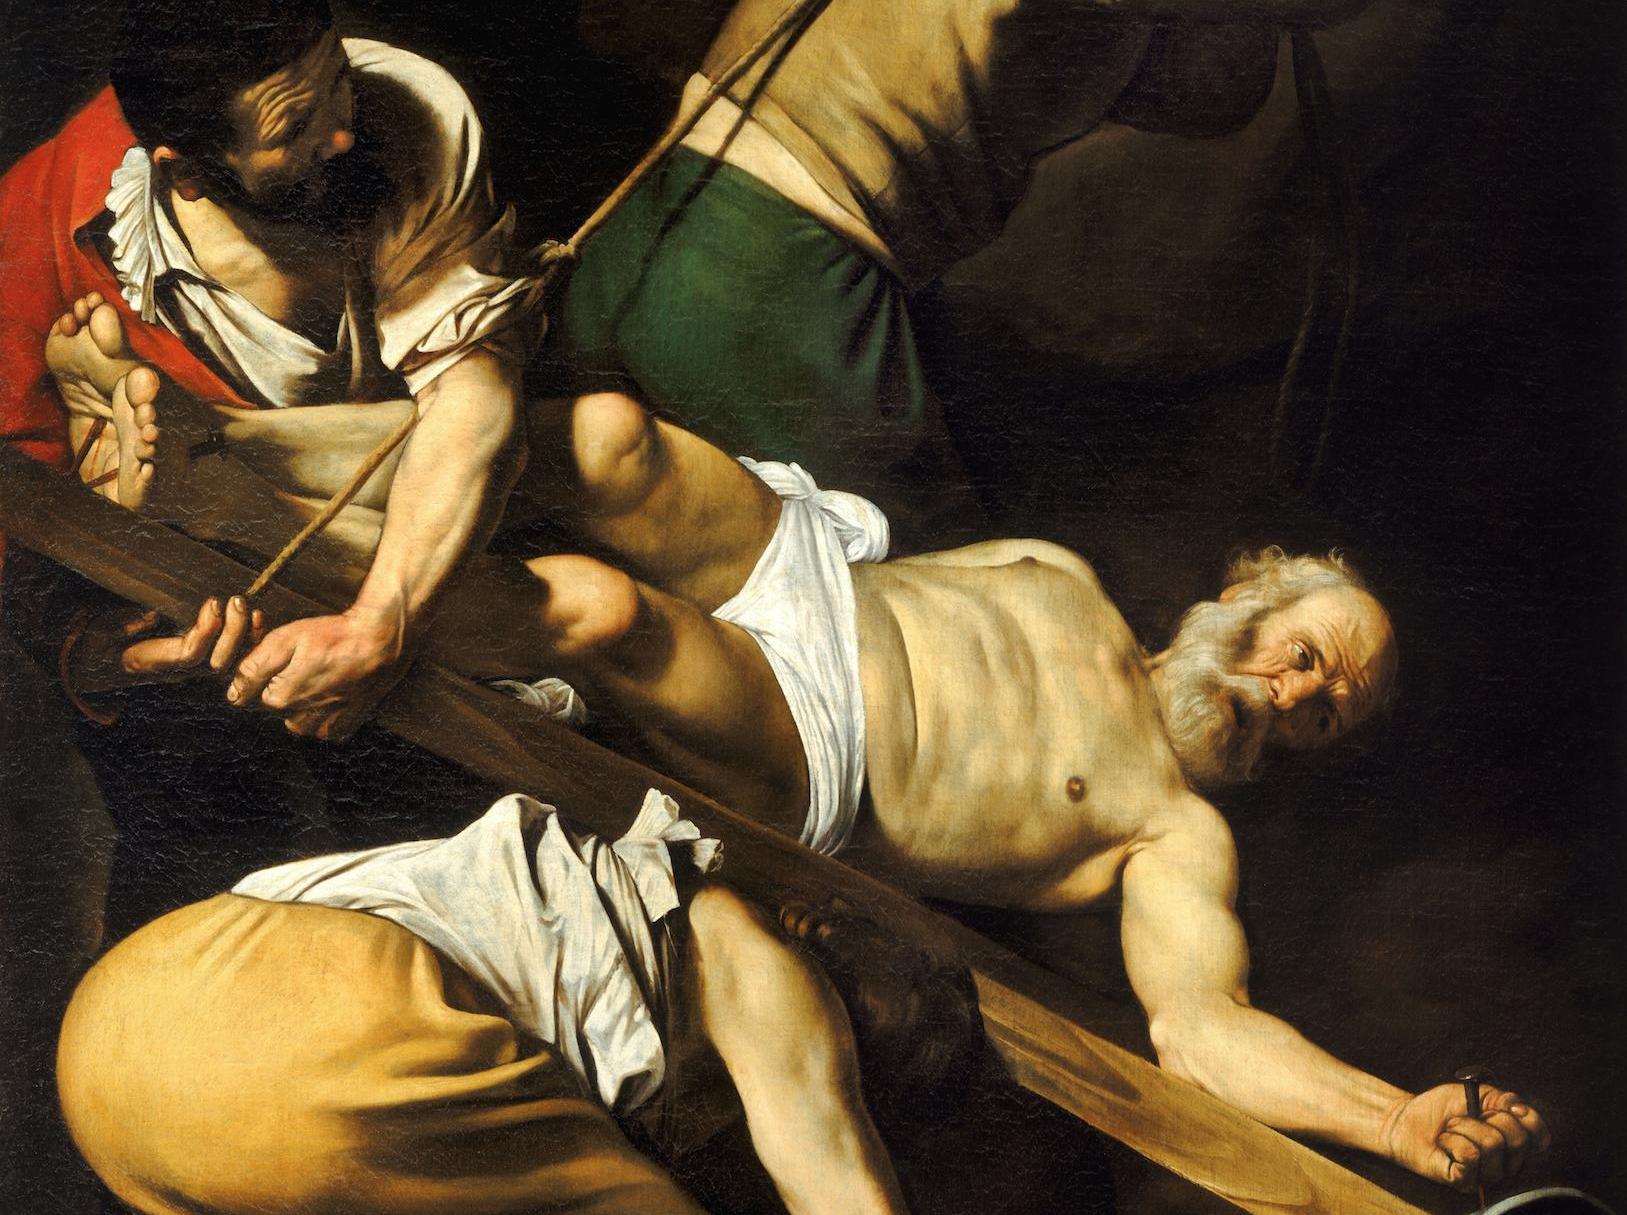 Caravaggio, The Crucifixion of St. Peter, Cerasi Chapel, Santa Maria del Popolo